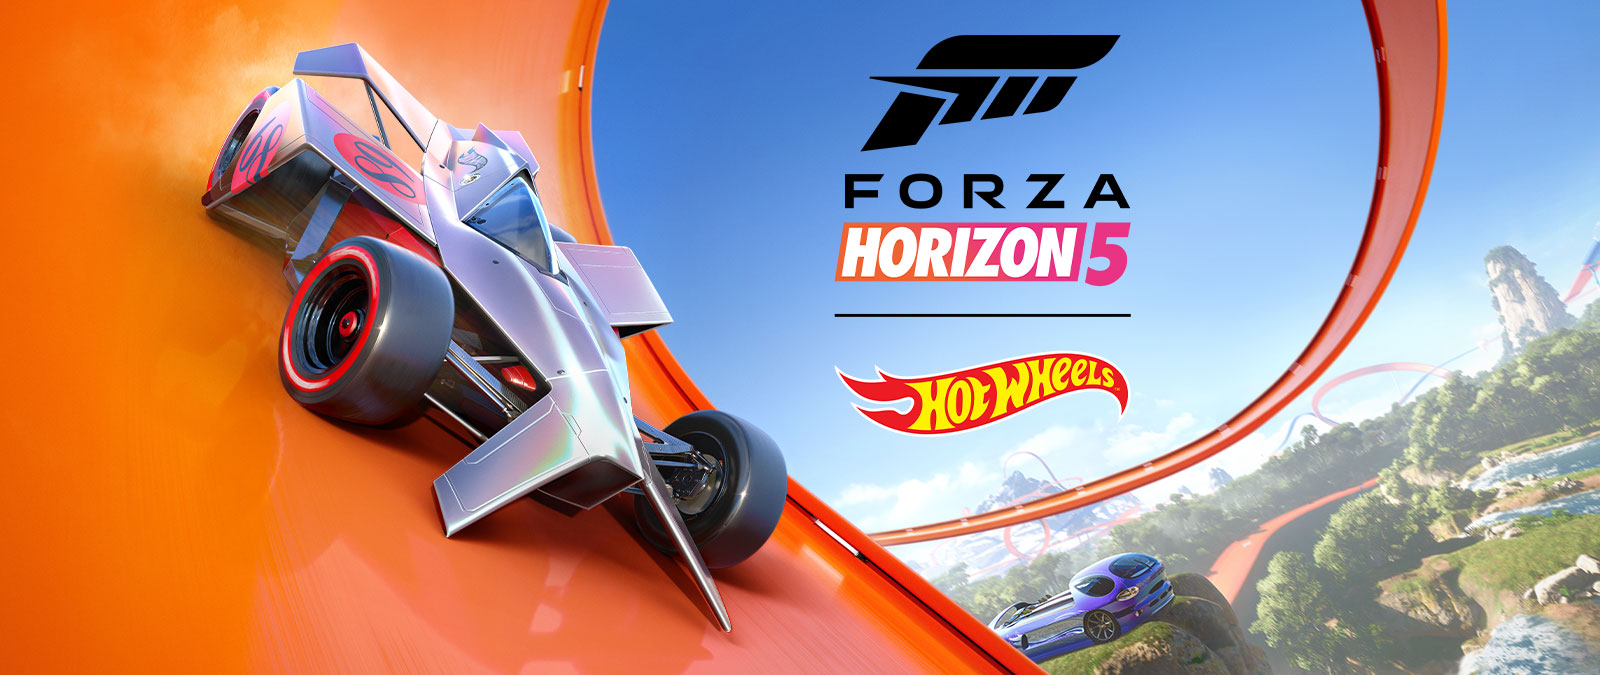 Forza Horizon 5, Hot Wheels, un coche corre alrededor de una pista de bucle Hot Wheels.